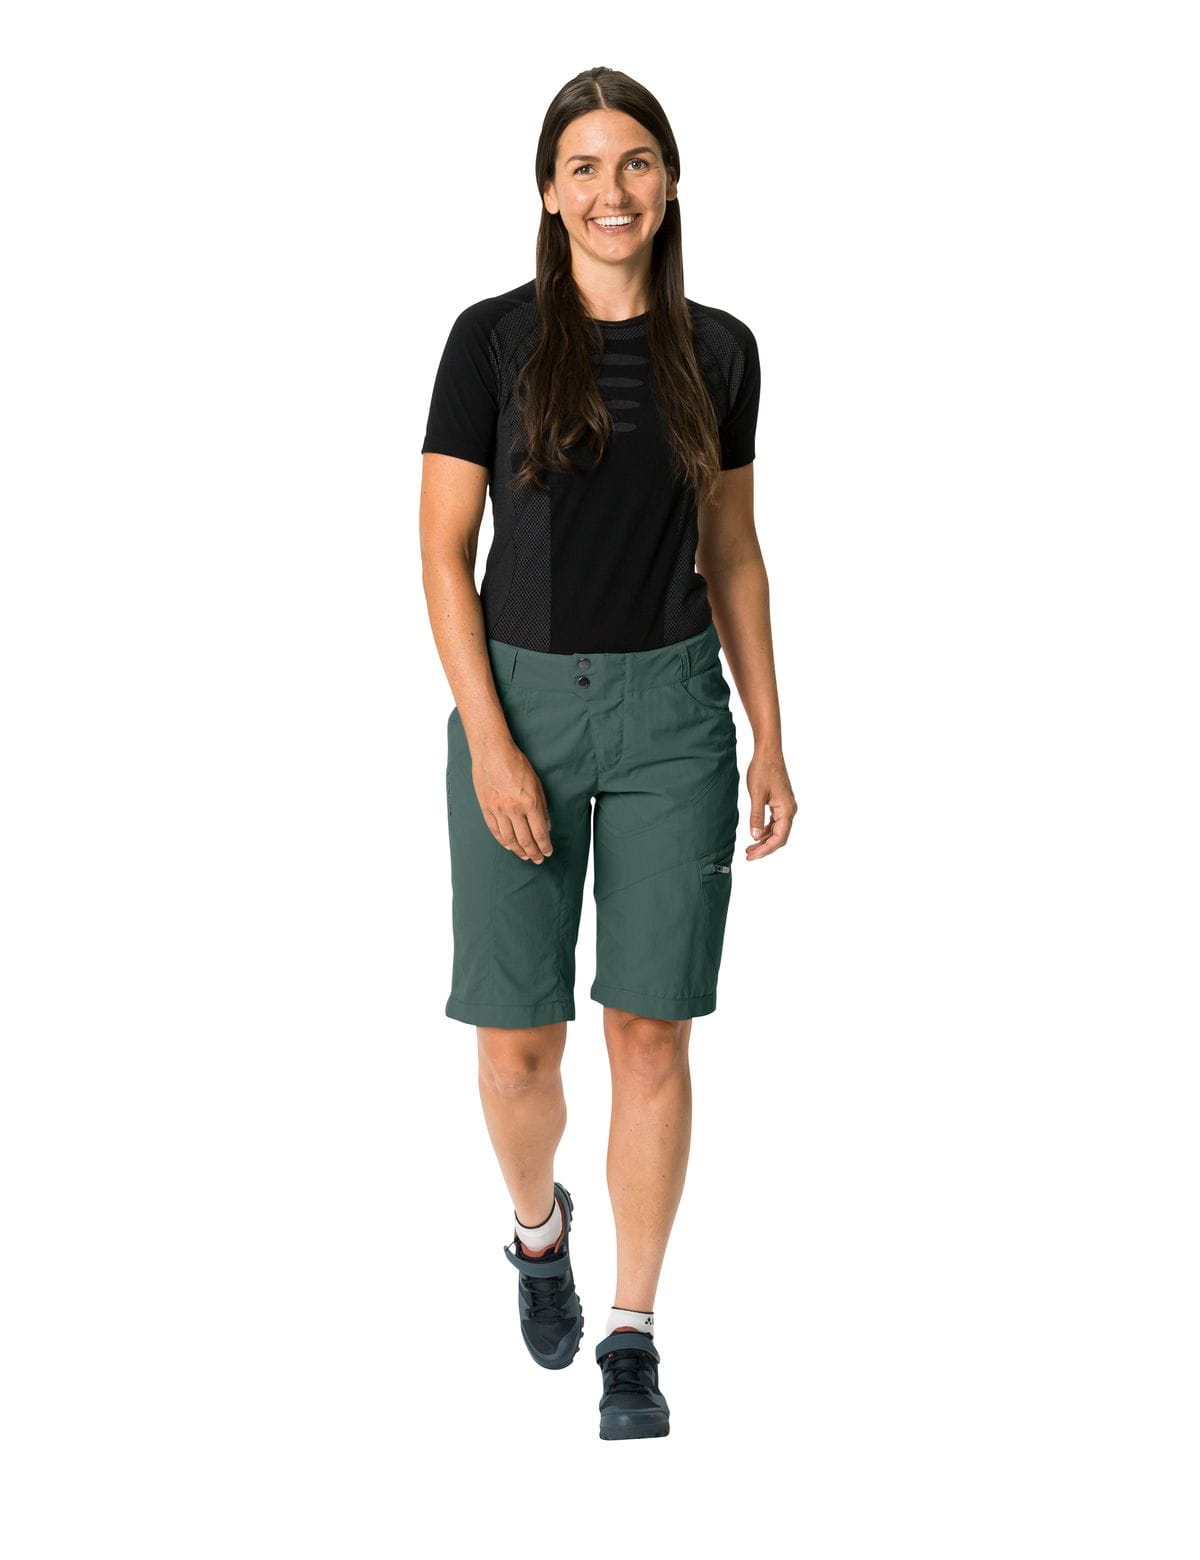 VAUDE Womens Tamaro Shorts Bike Shorts with herausnehmbarer Innenhose